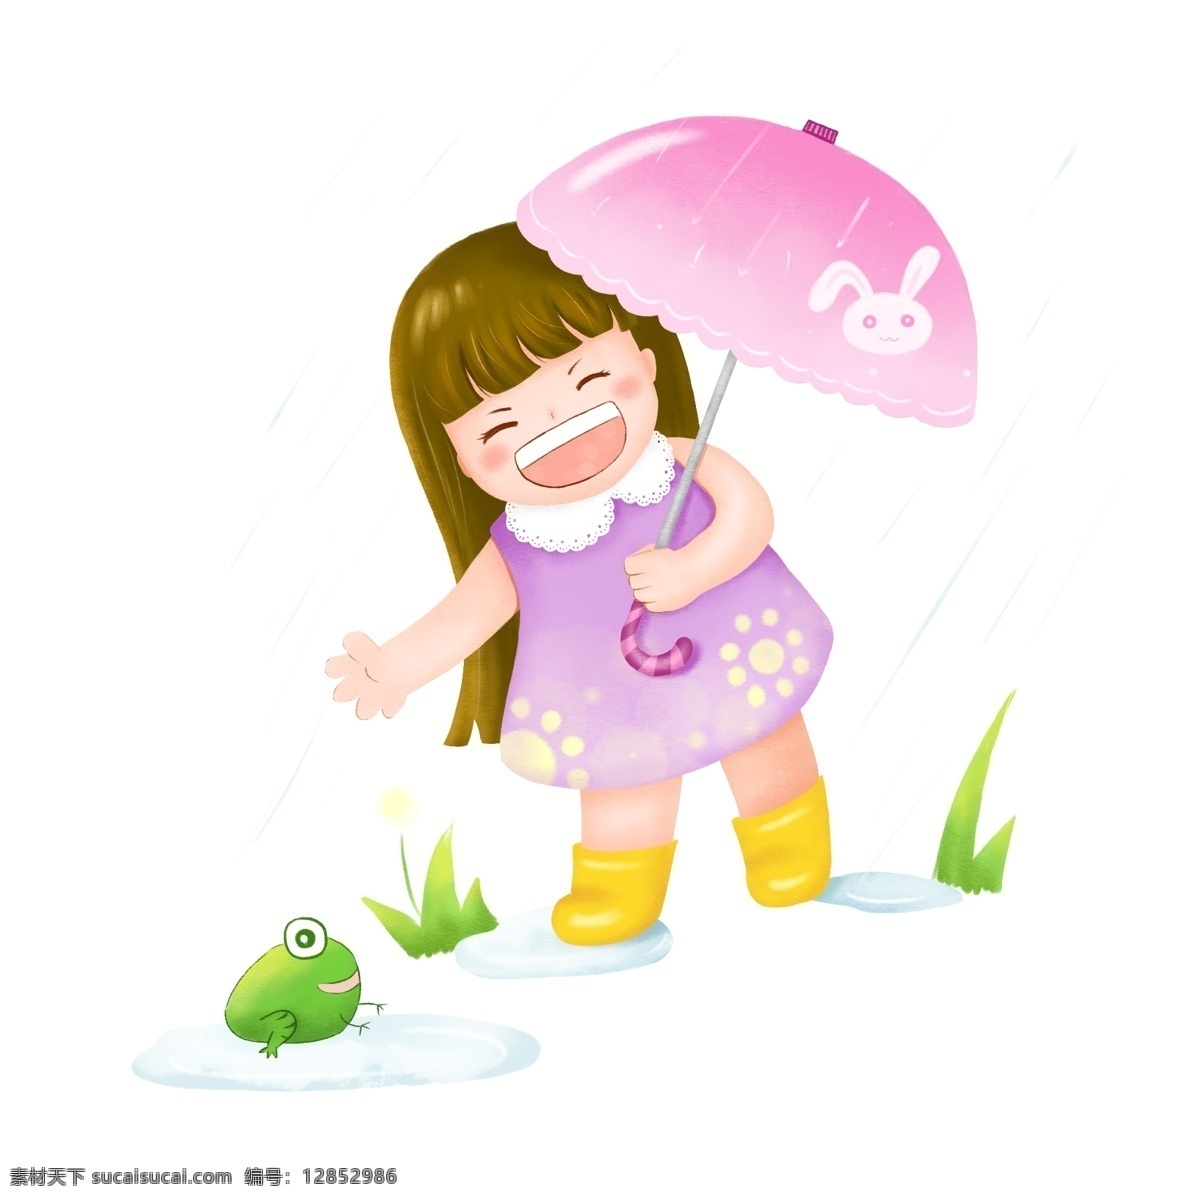 雨天 打伞 小女孩 撑伞 撑伞的小女孩 谷雨 可爱女孩形象 青蛙 下雨天 打伞的小女孩